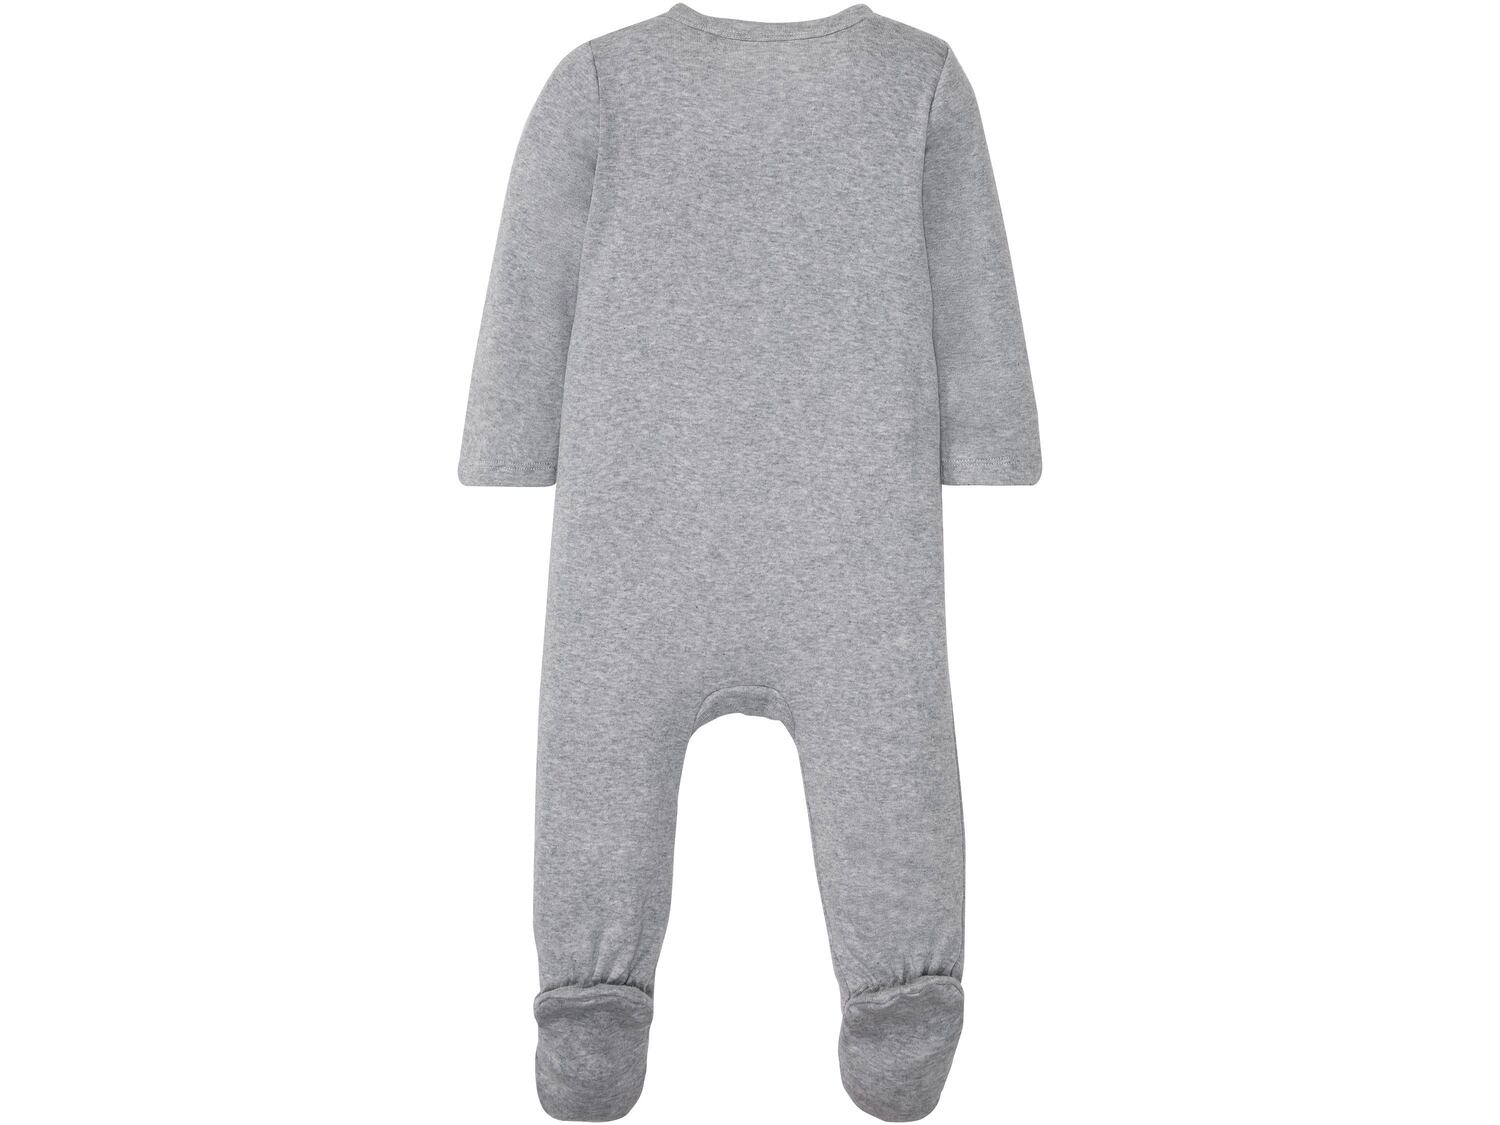 Pajacyk niemowlęcy Lupilu, cena 17,99 PLN 
- rozmiary: 62-92
- 100% bawełny
- ...